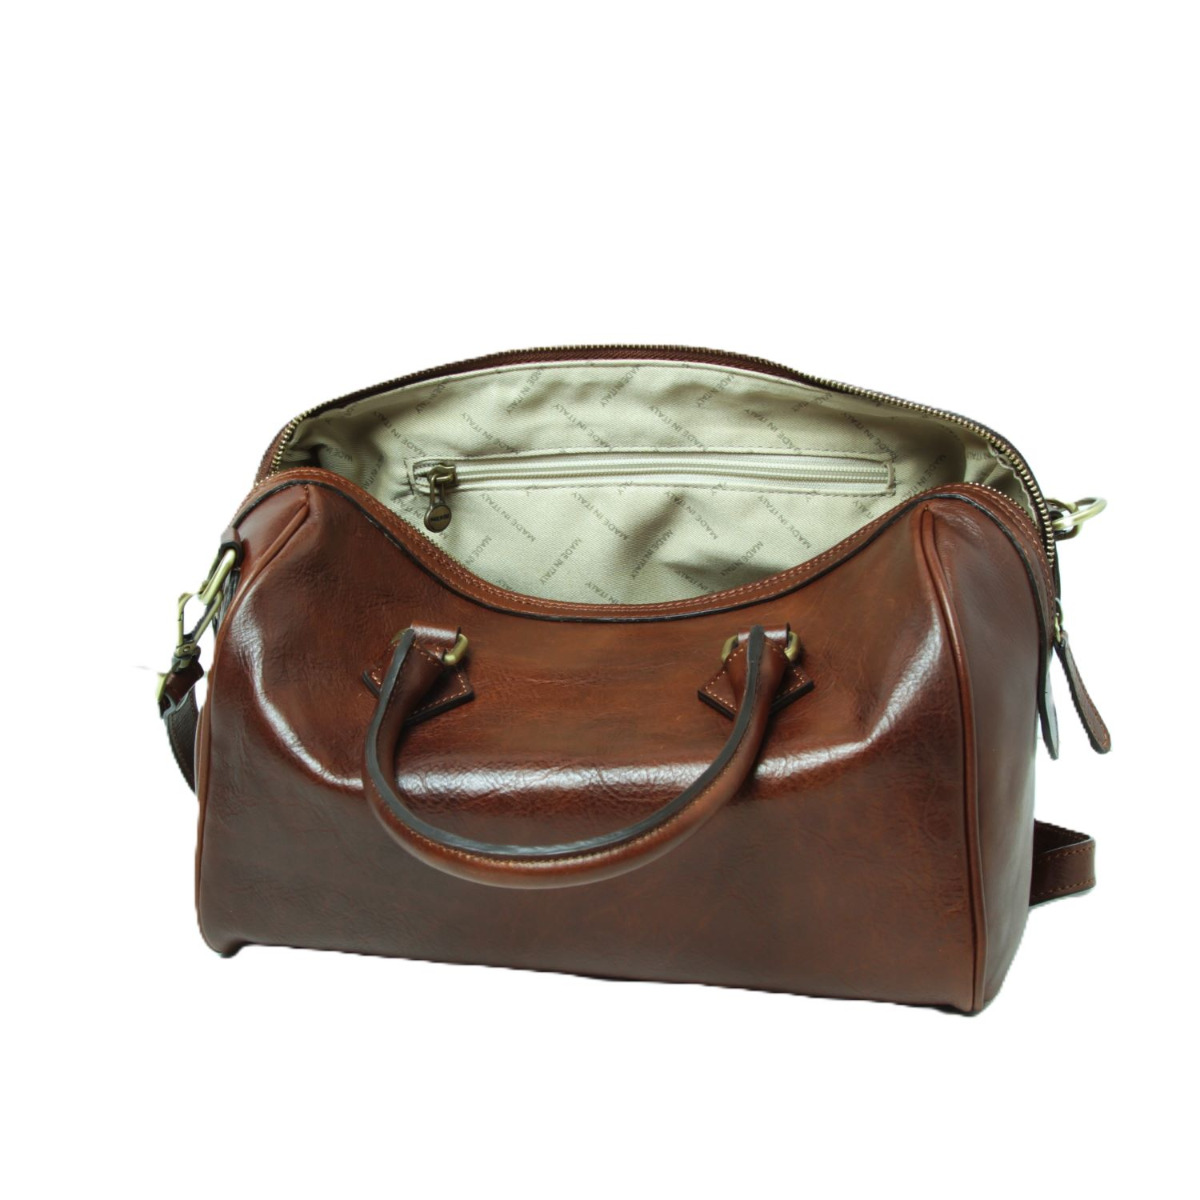 Double handled shoulder bag|416093MA|Old Angler Firenze